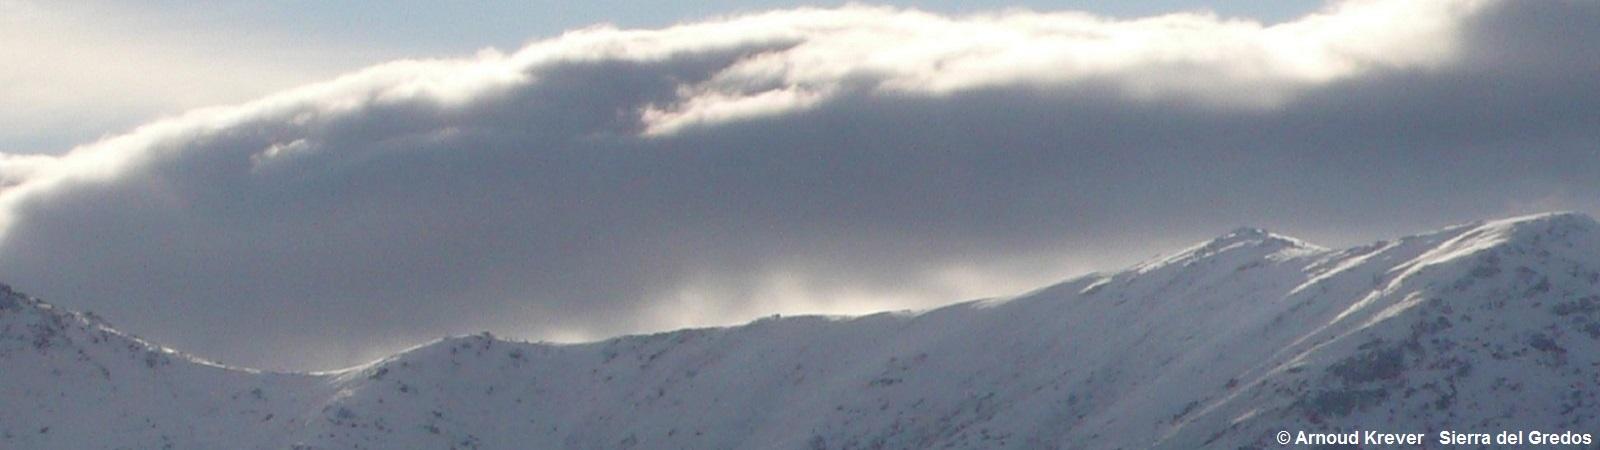 Plata0614 Een blik op de besneeuwde bergen in de vroege morgen